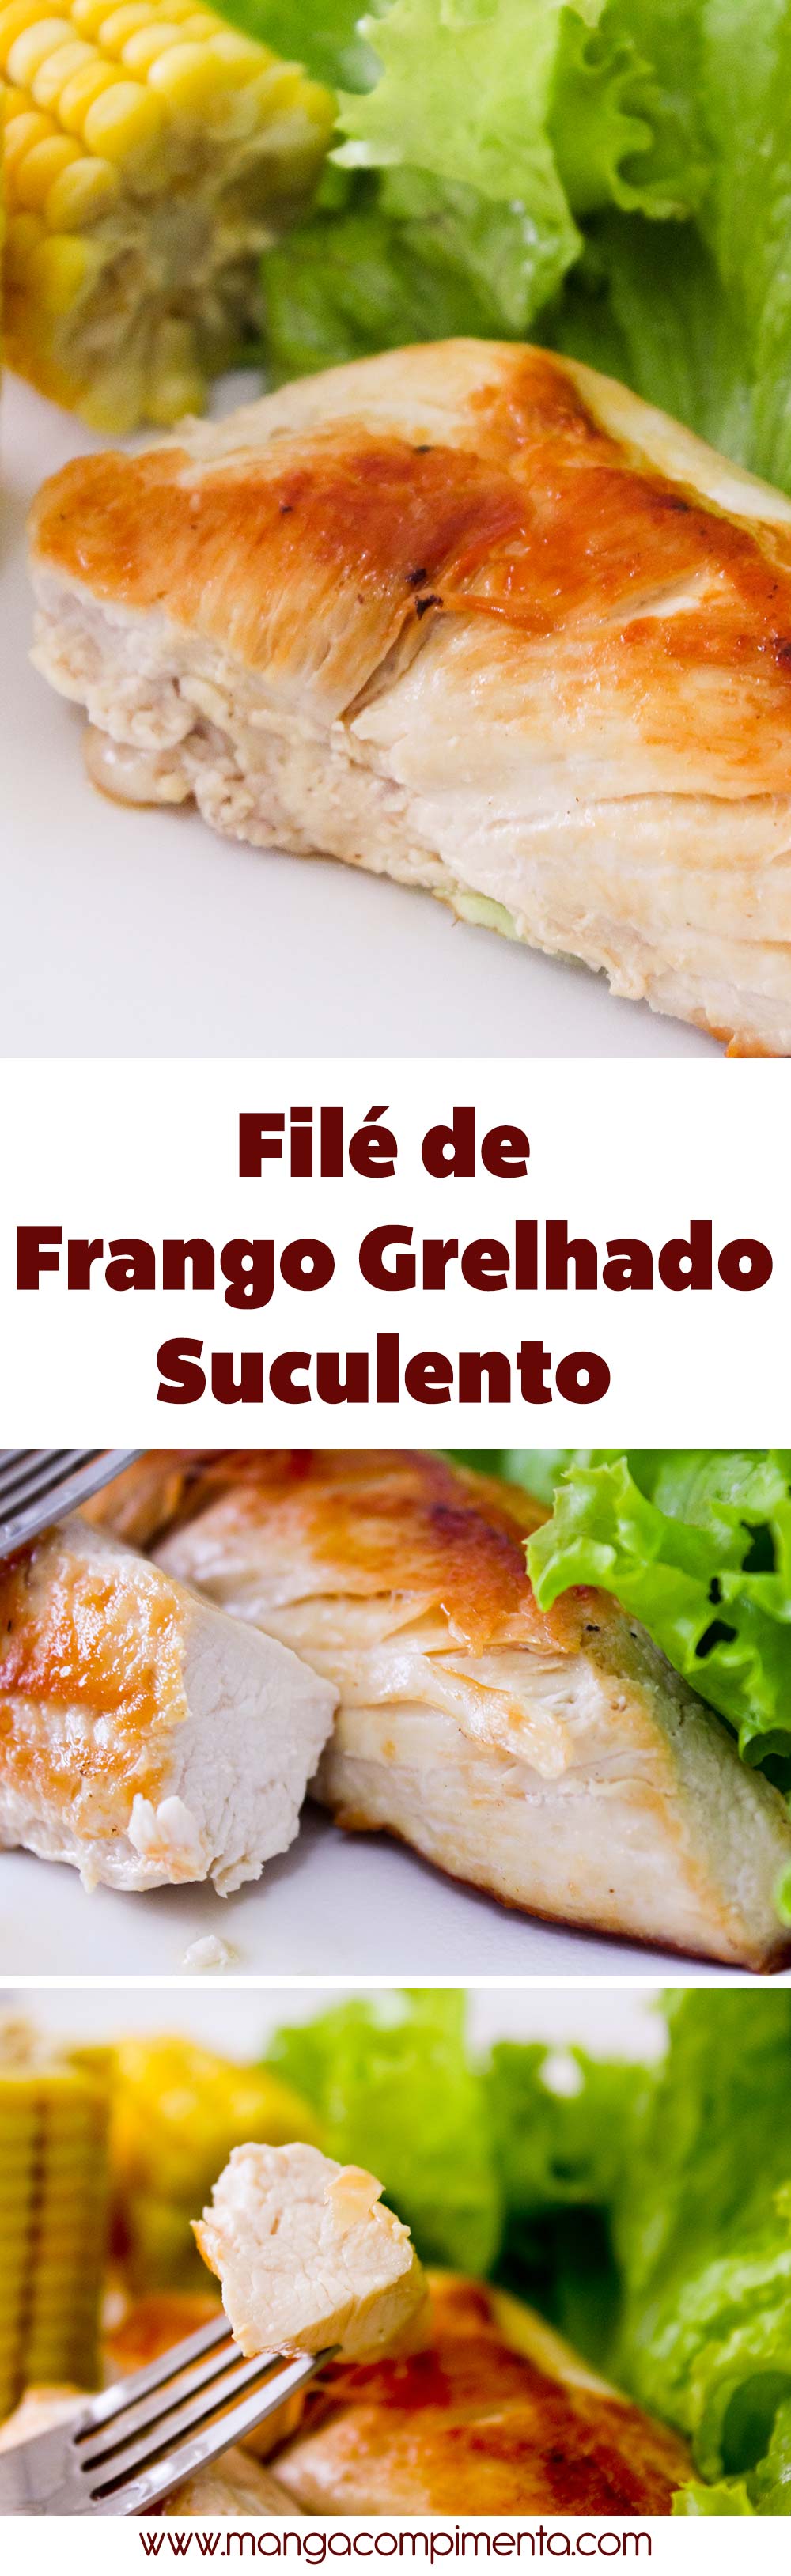 Filé de Frango Grelhado Suculento - para uma refeição saudável, gostosa e rápida durante a semana!